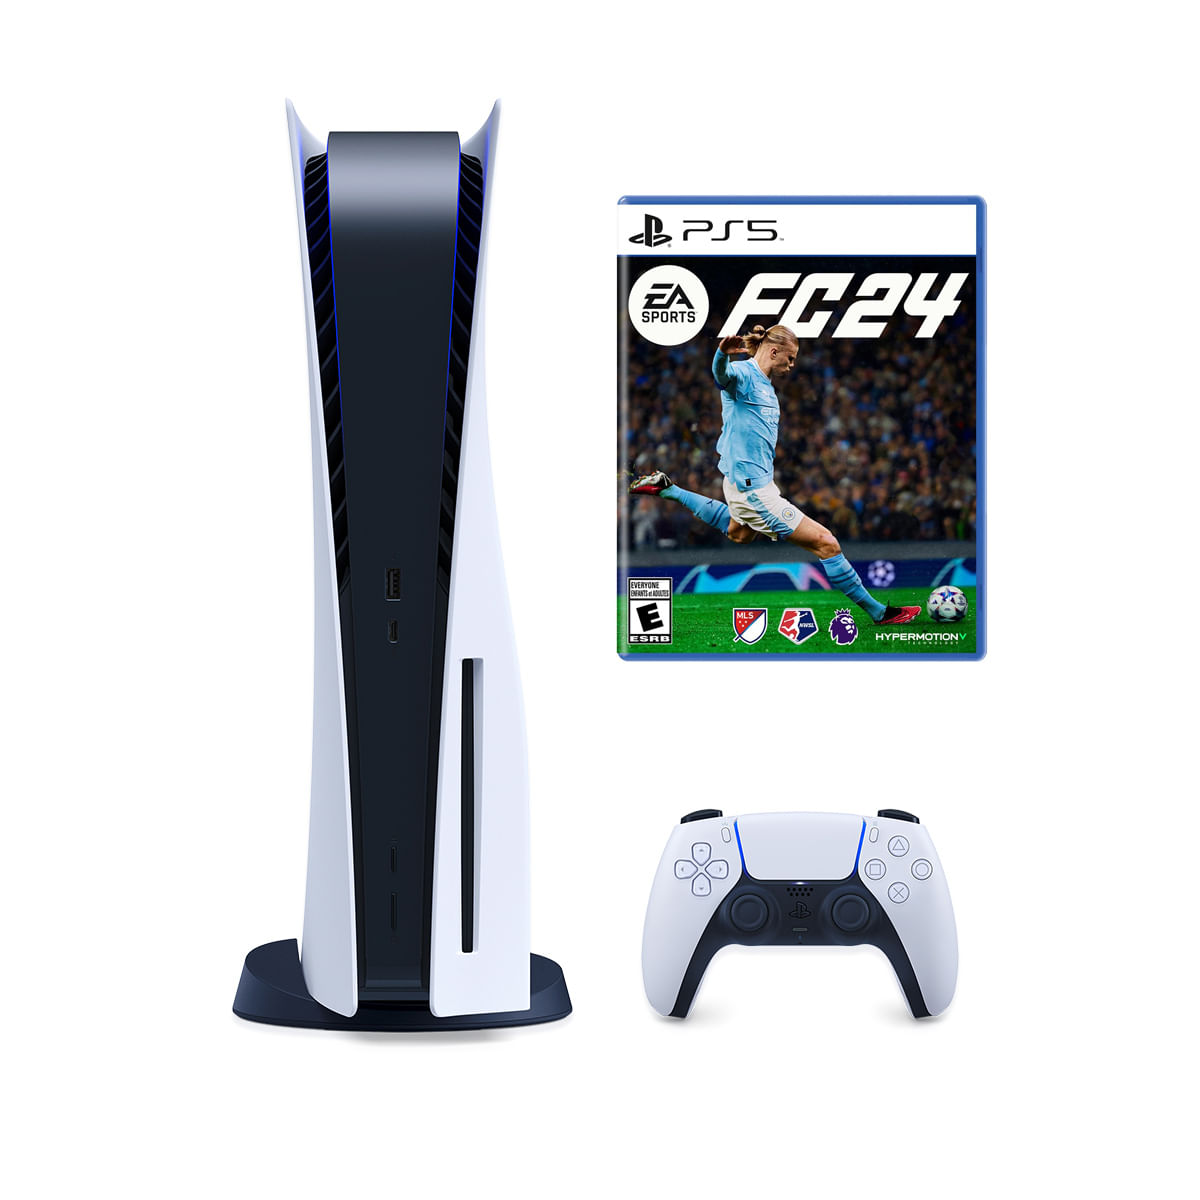 Games Plaza - Consola Playstation 5 standard (con lector de discos) en  $9,990 y paquete con juego FC 24 en $10,990. (Solo efectivo o  transferencia).